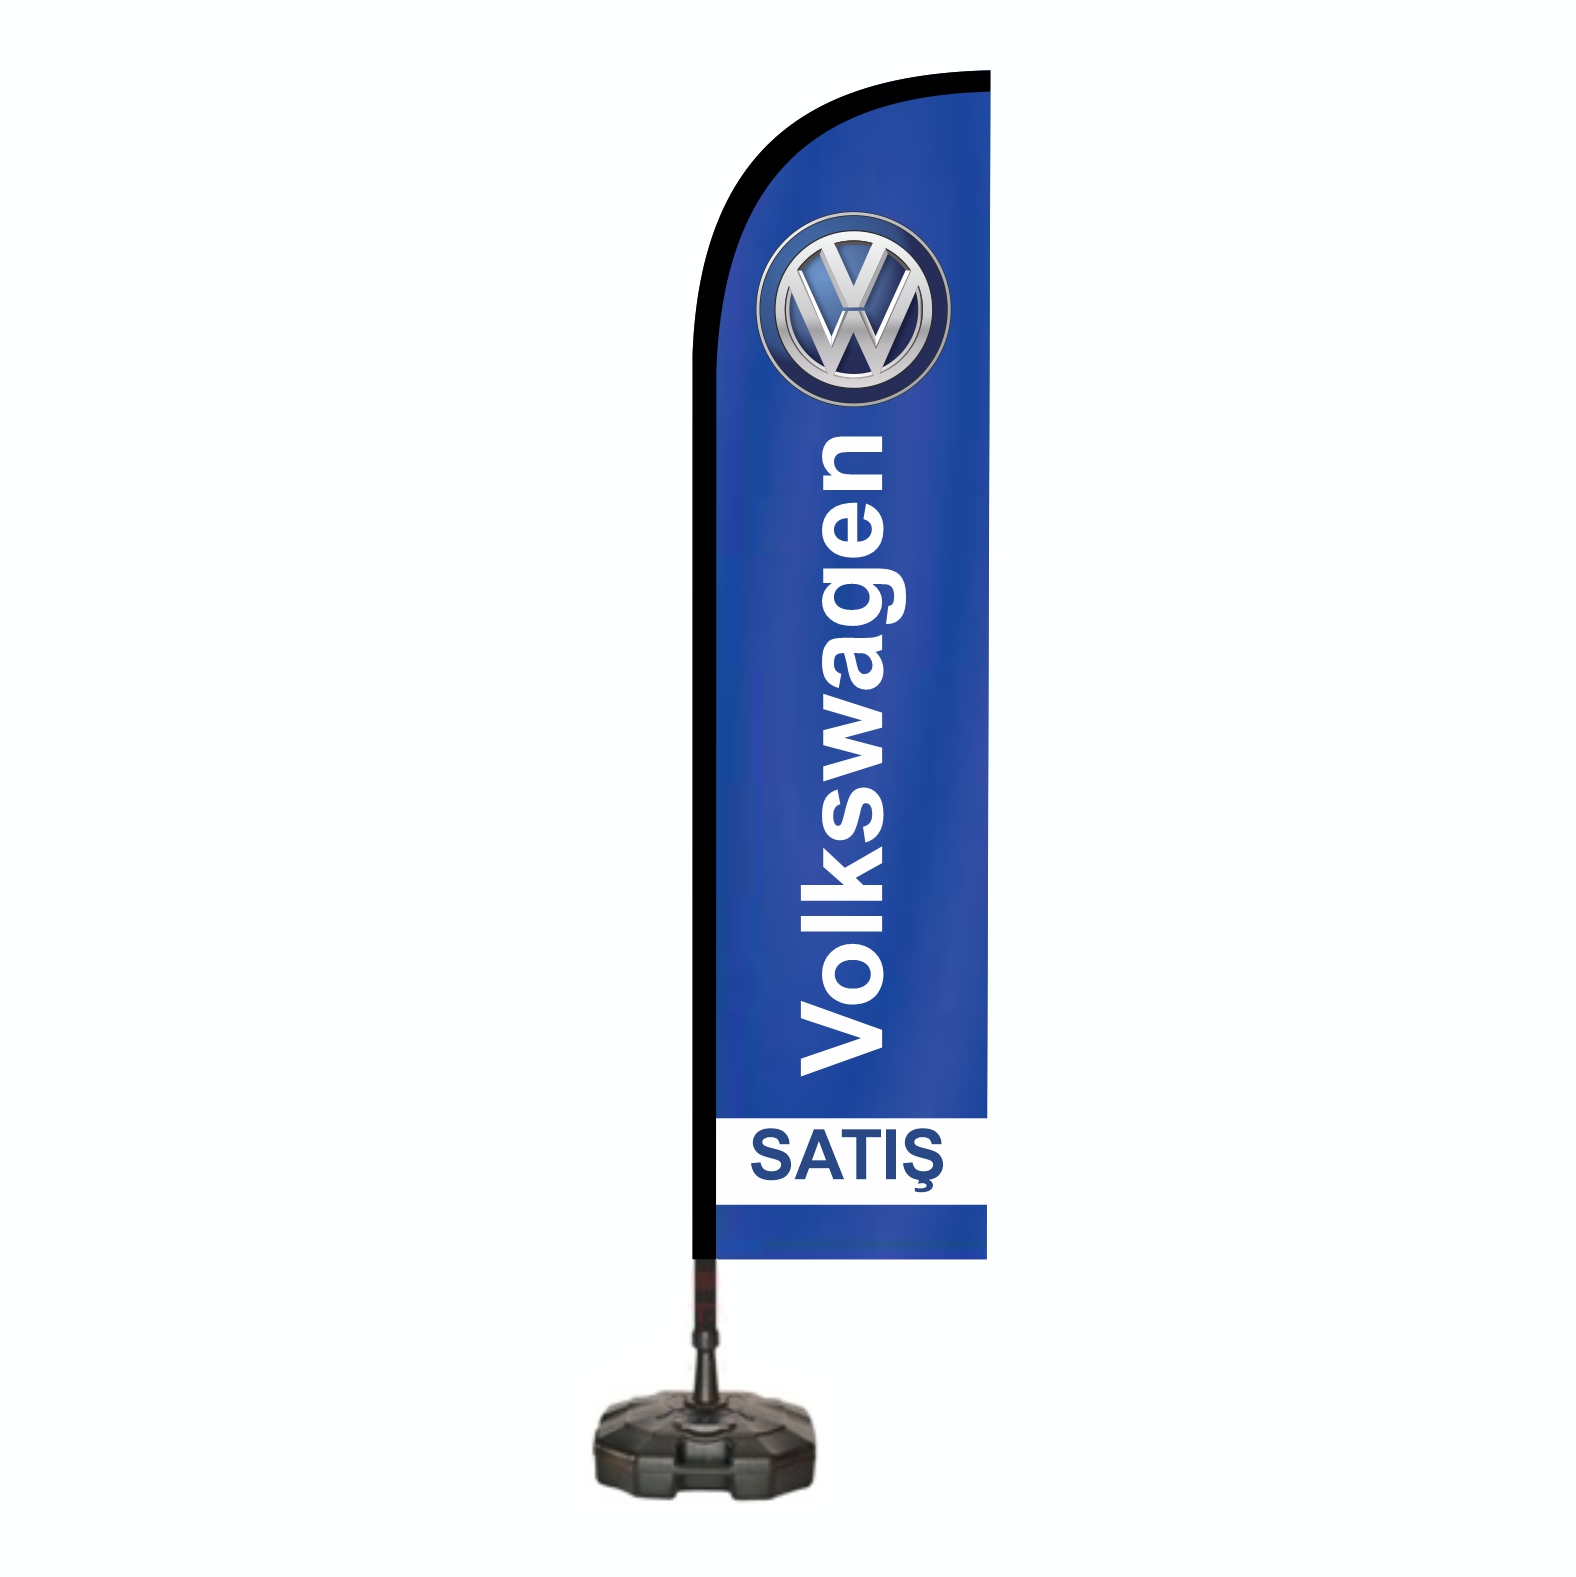 Volkswagen Yelken Bayraklar malatlar